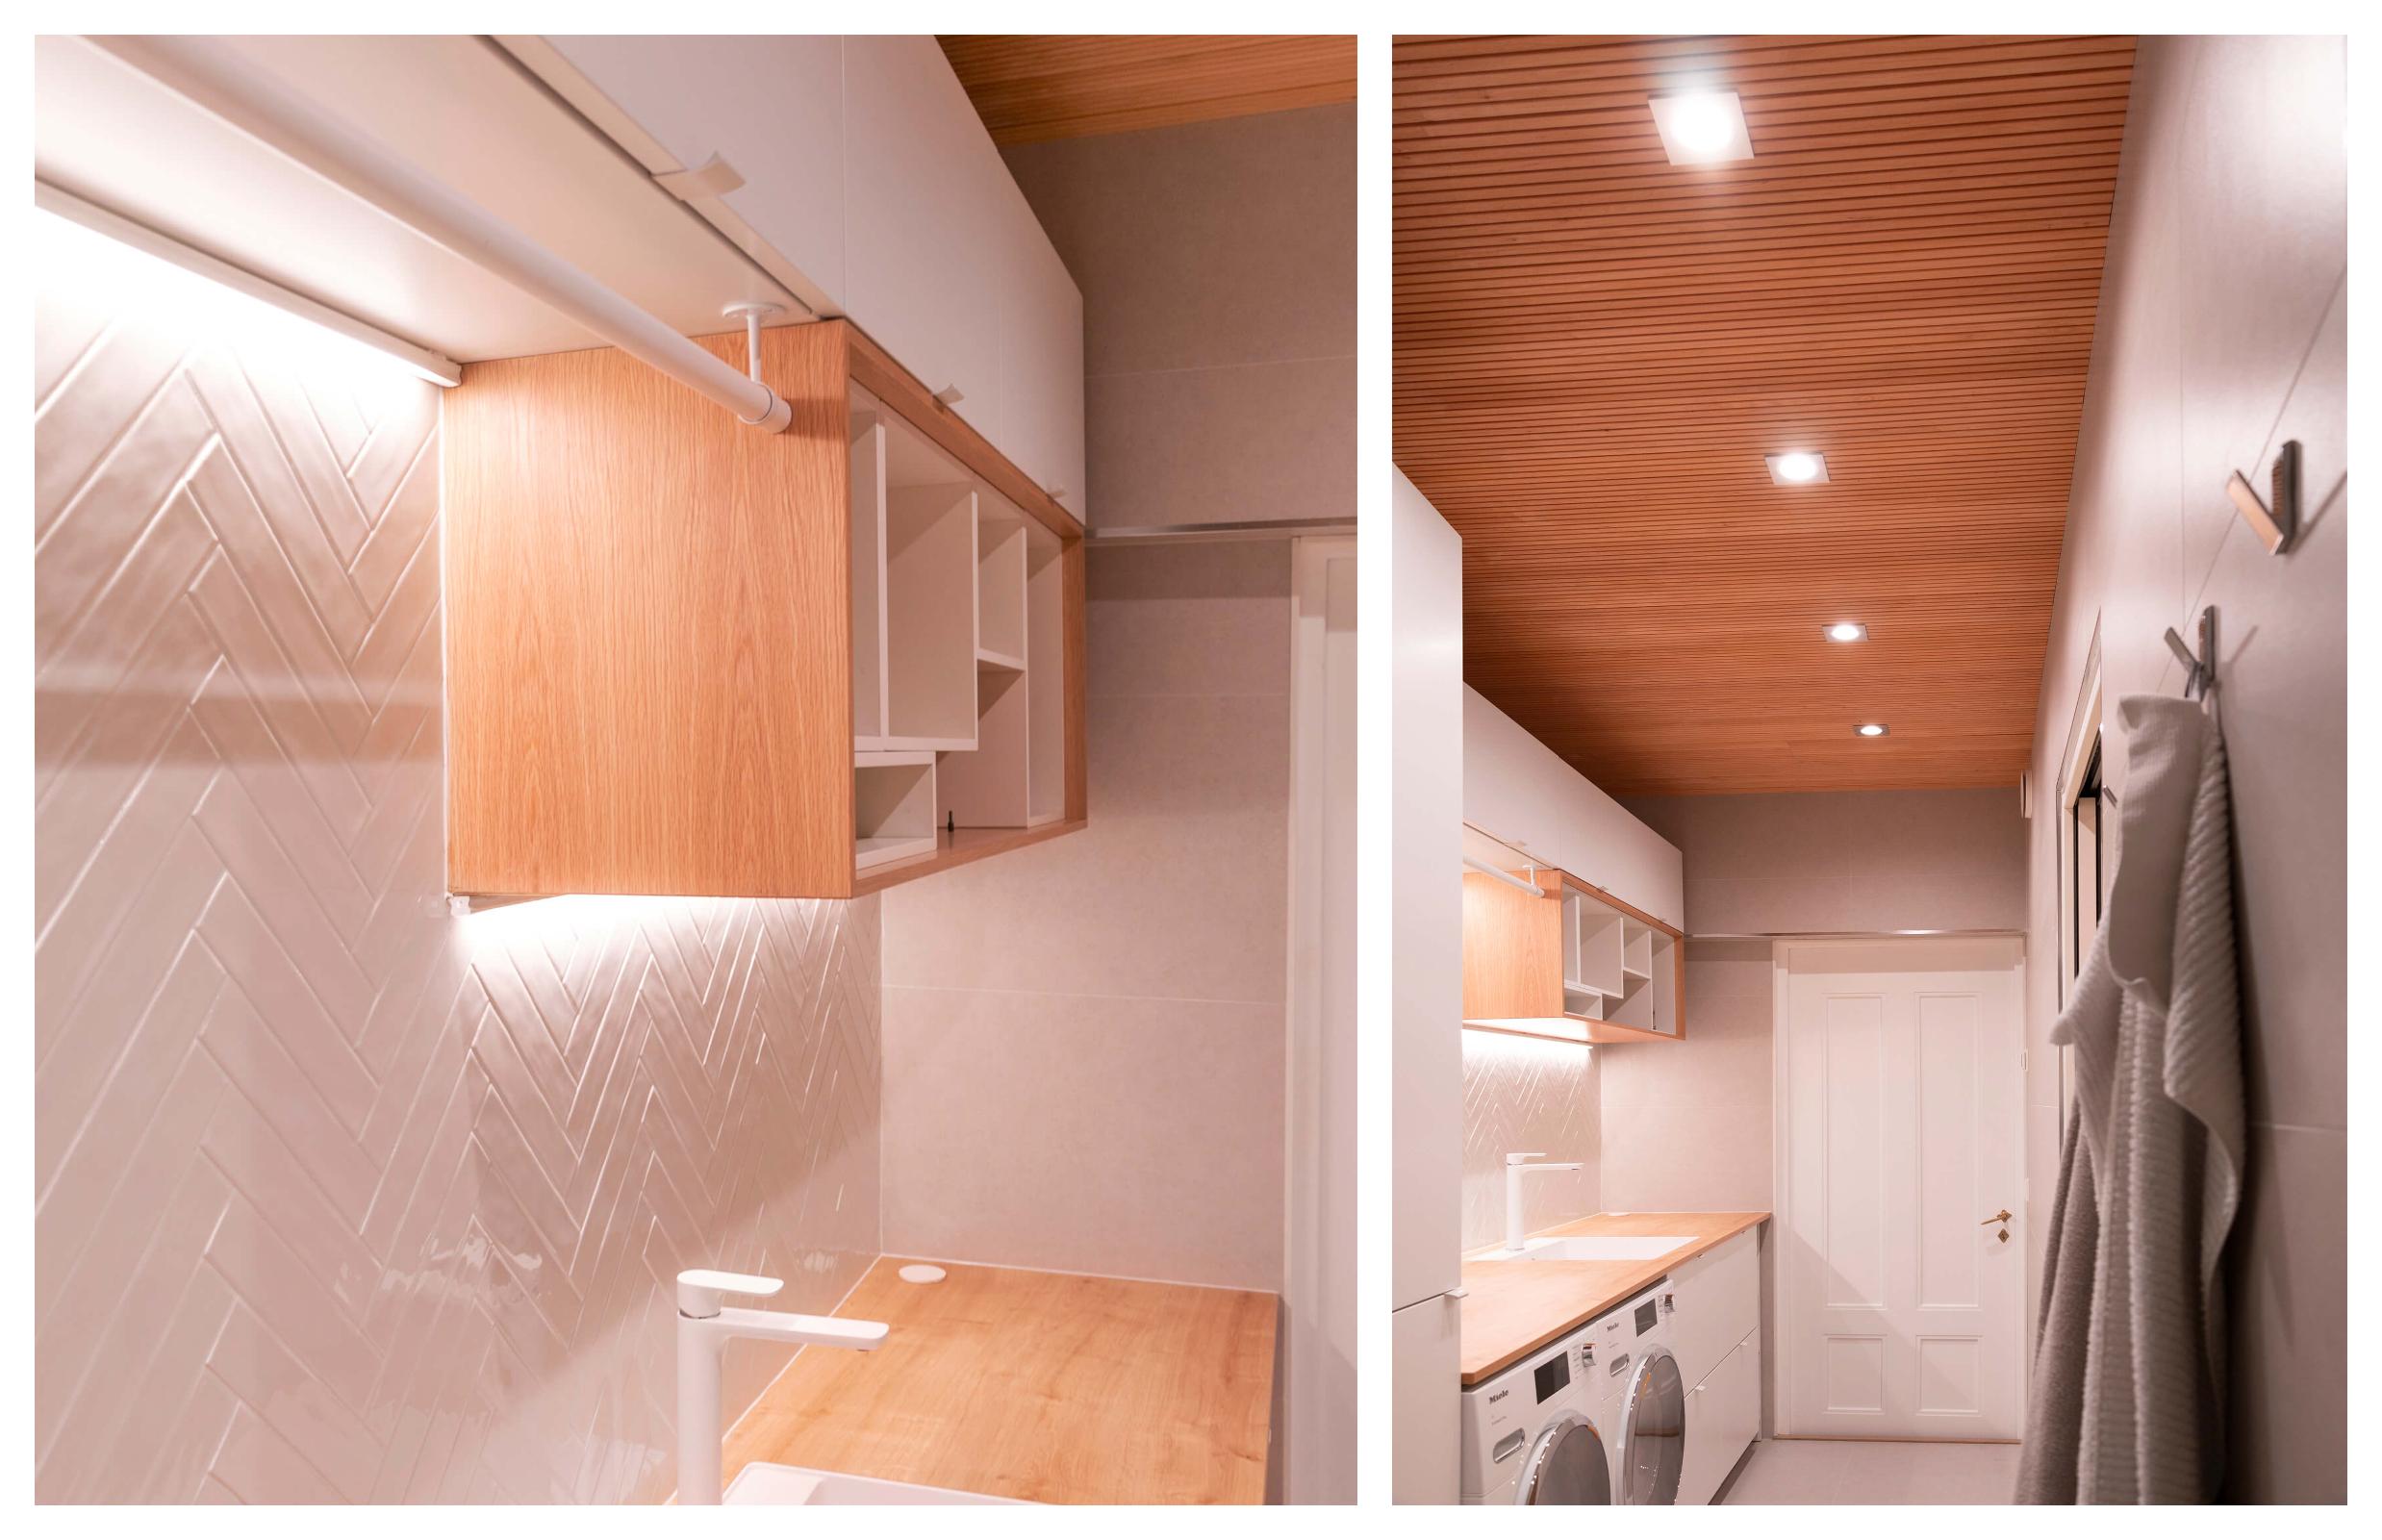 Kodinhoitohuoneen valaistus on yhdistelmä led-spotteja ja led-nauhaa, joten valoa saadaan tarpeeksi vaatehuoltoon.